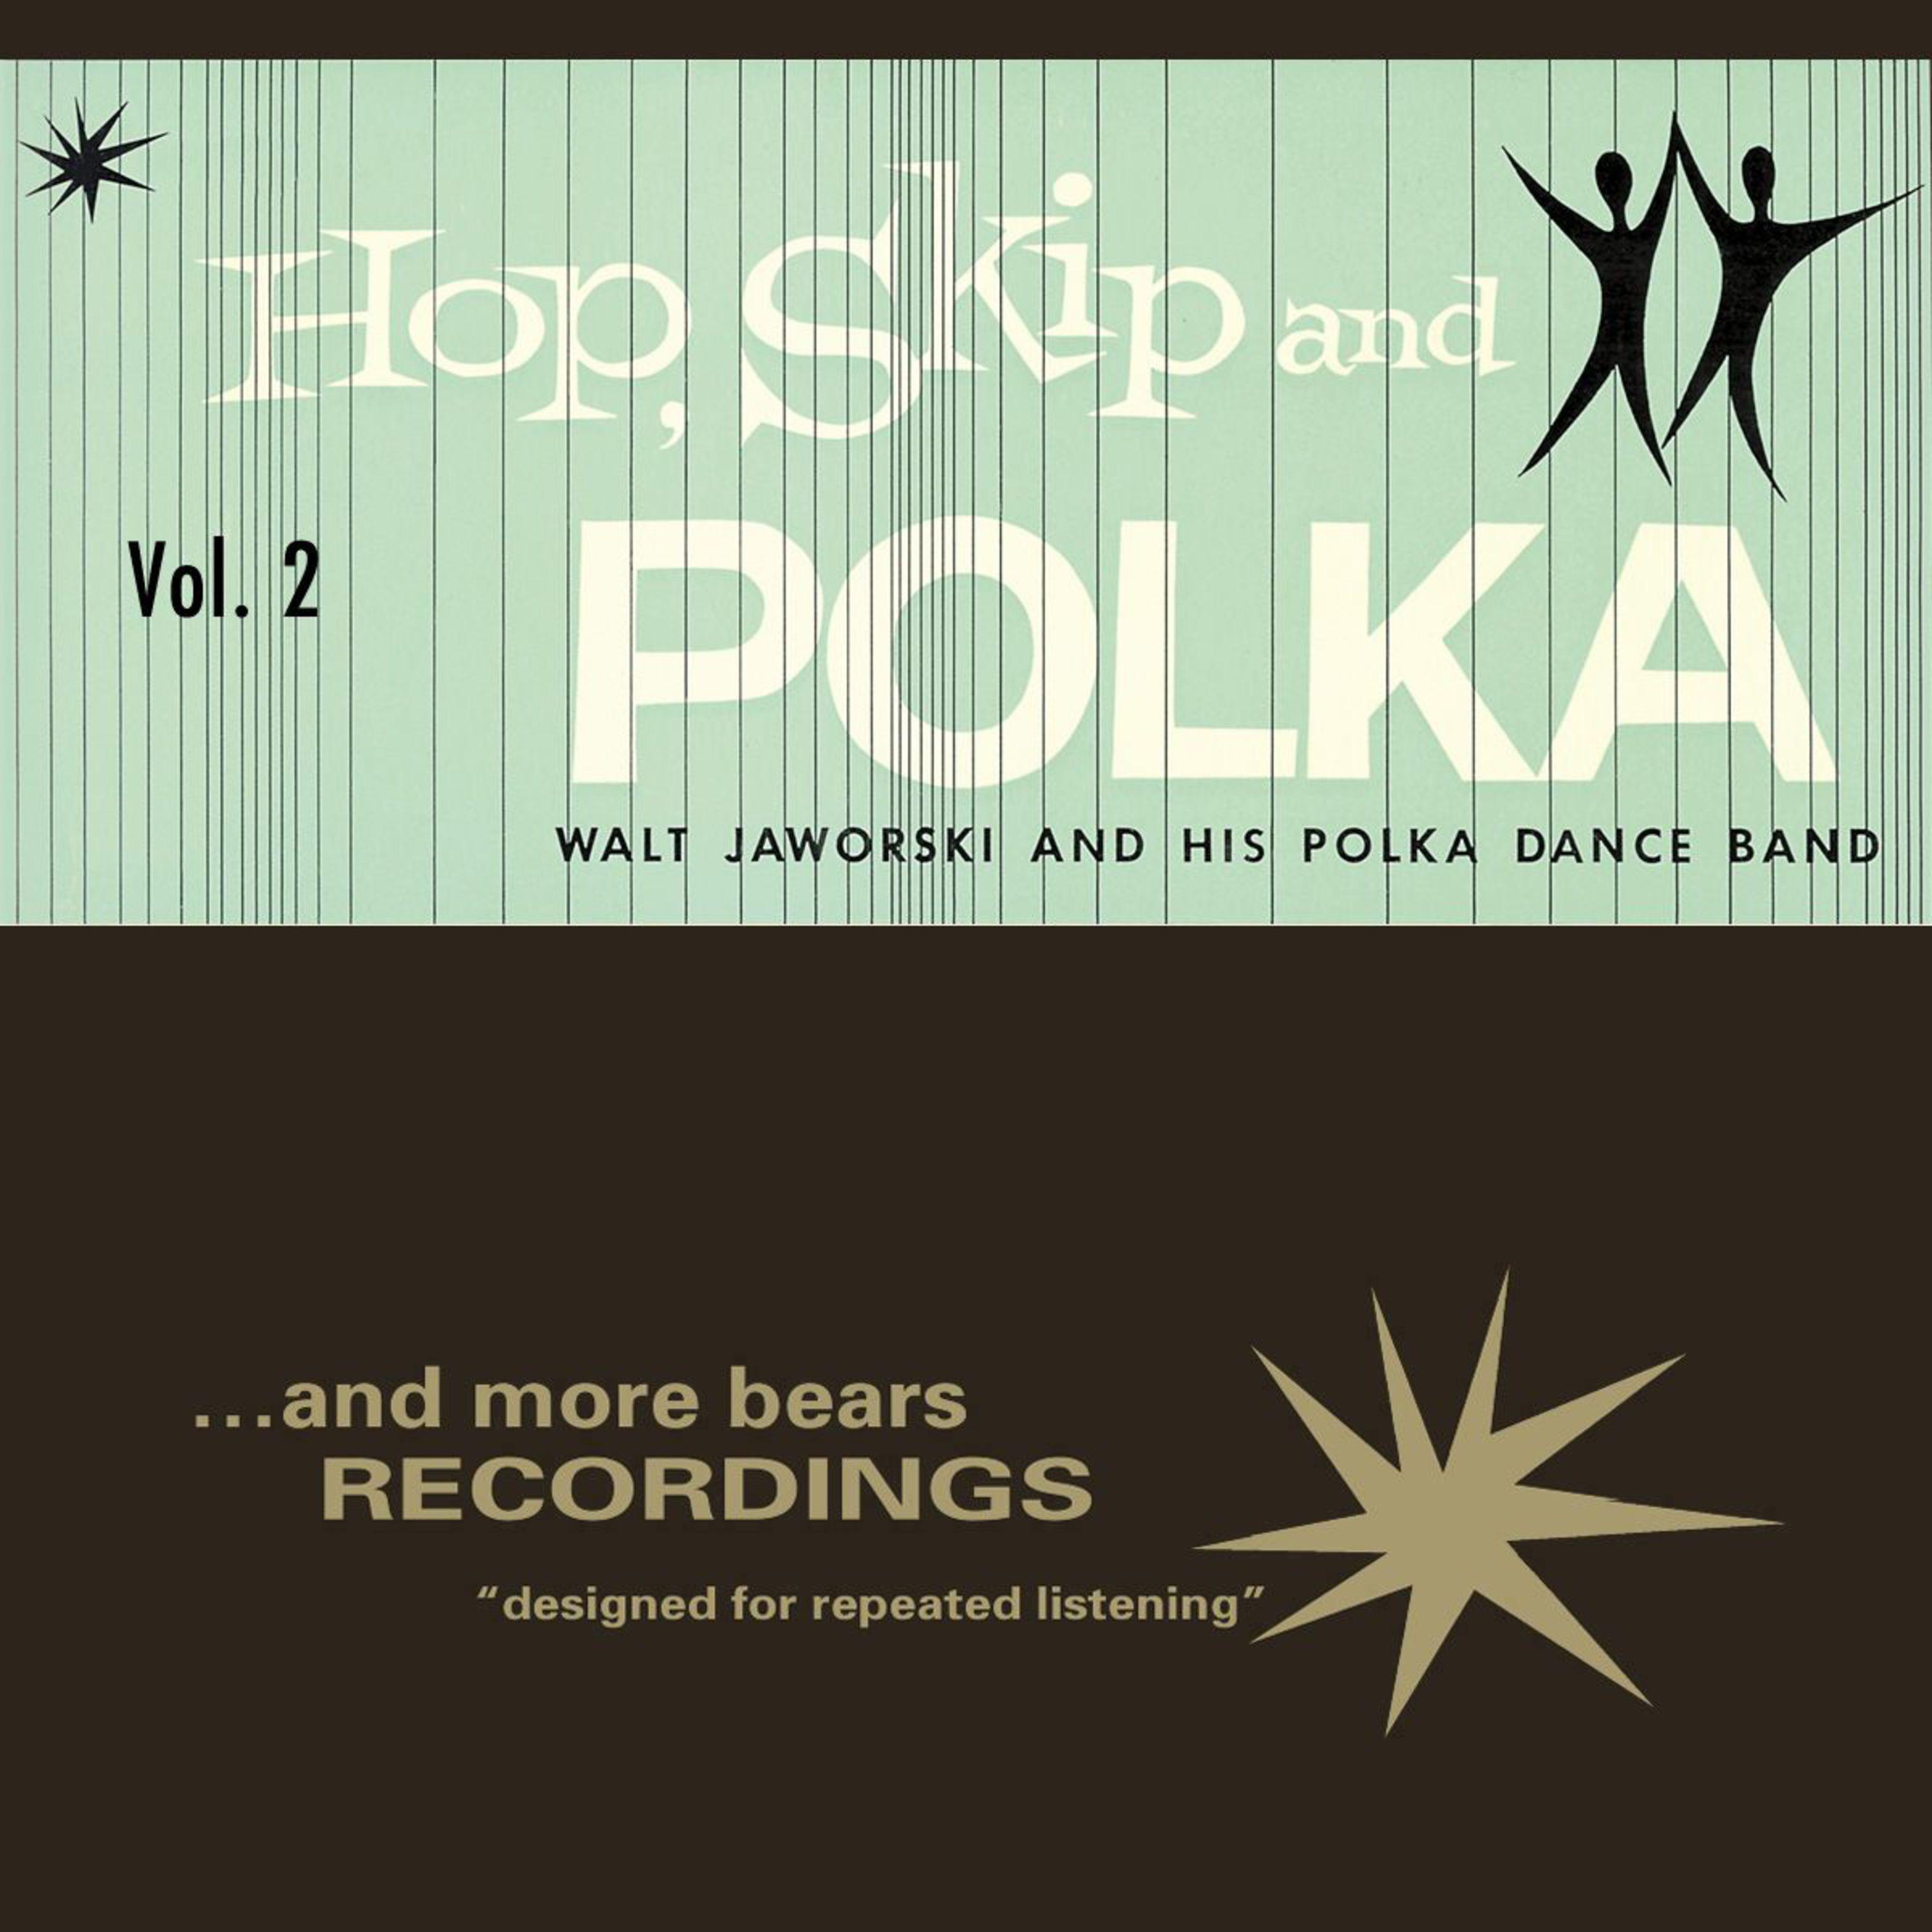 Hop, Skip and Polka, Vol. 2